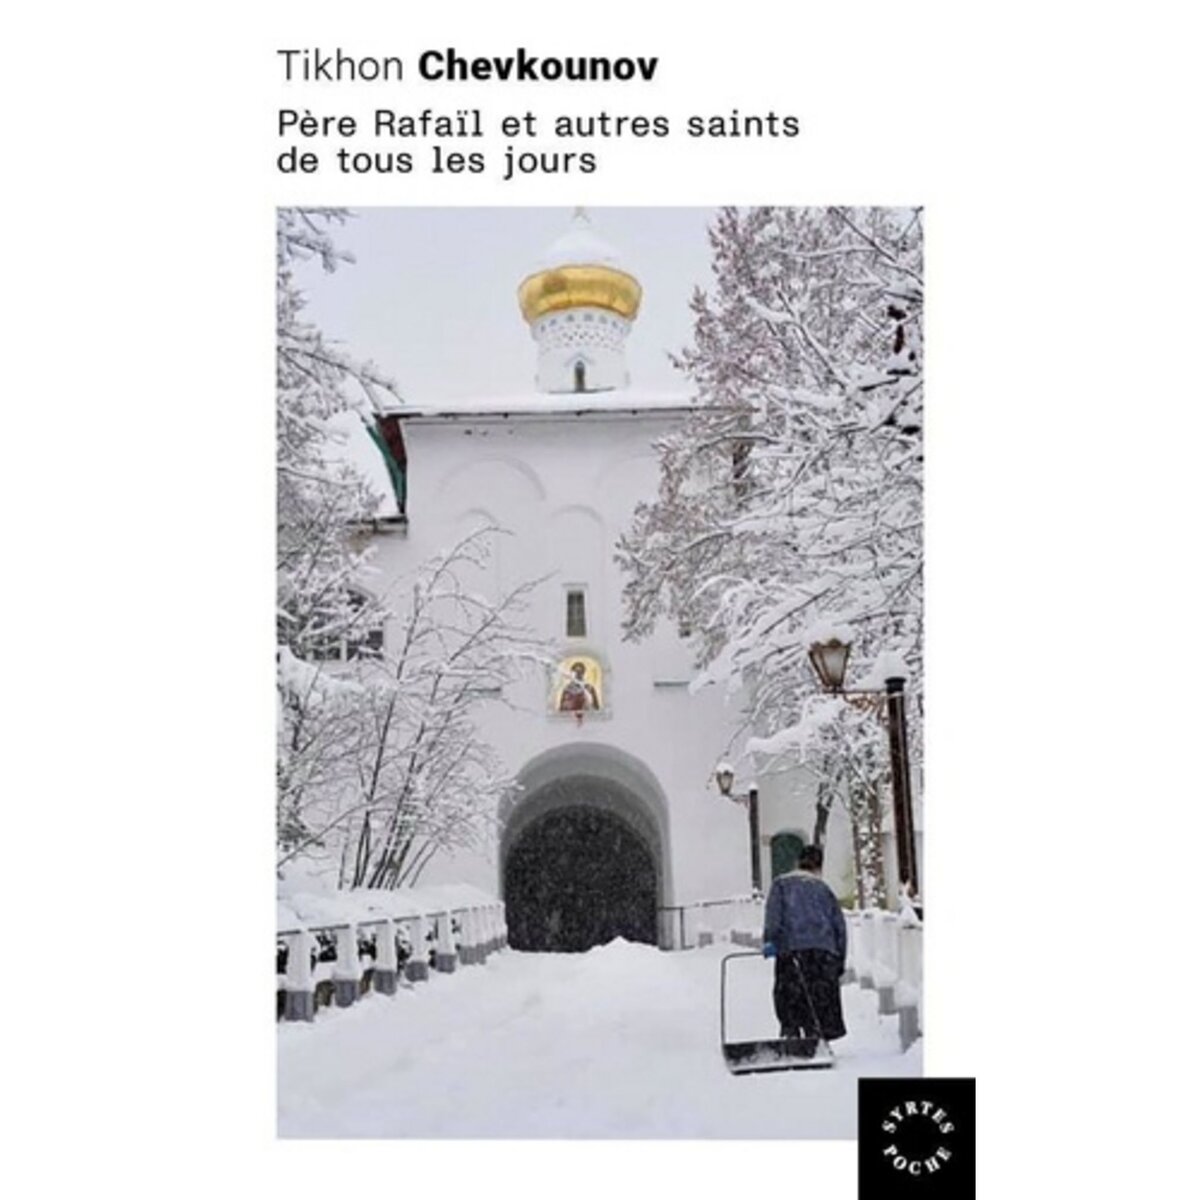  PERE RAFAIL ET AUTRES SAINTS DE TOUS LES JOURS, Chevkounov Tikhon